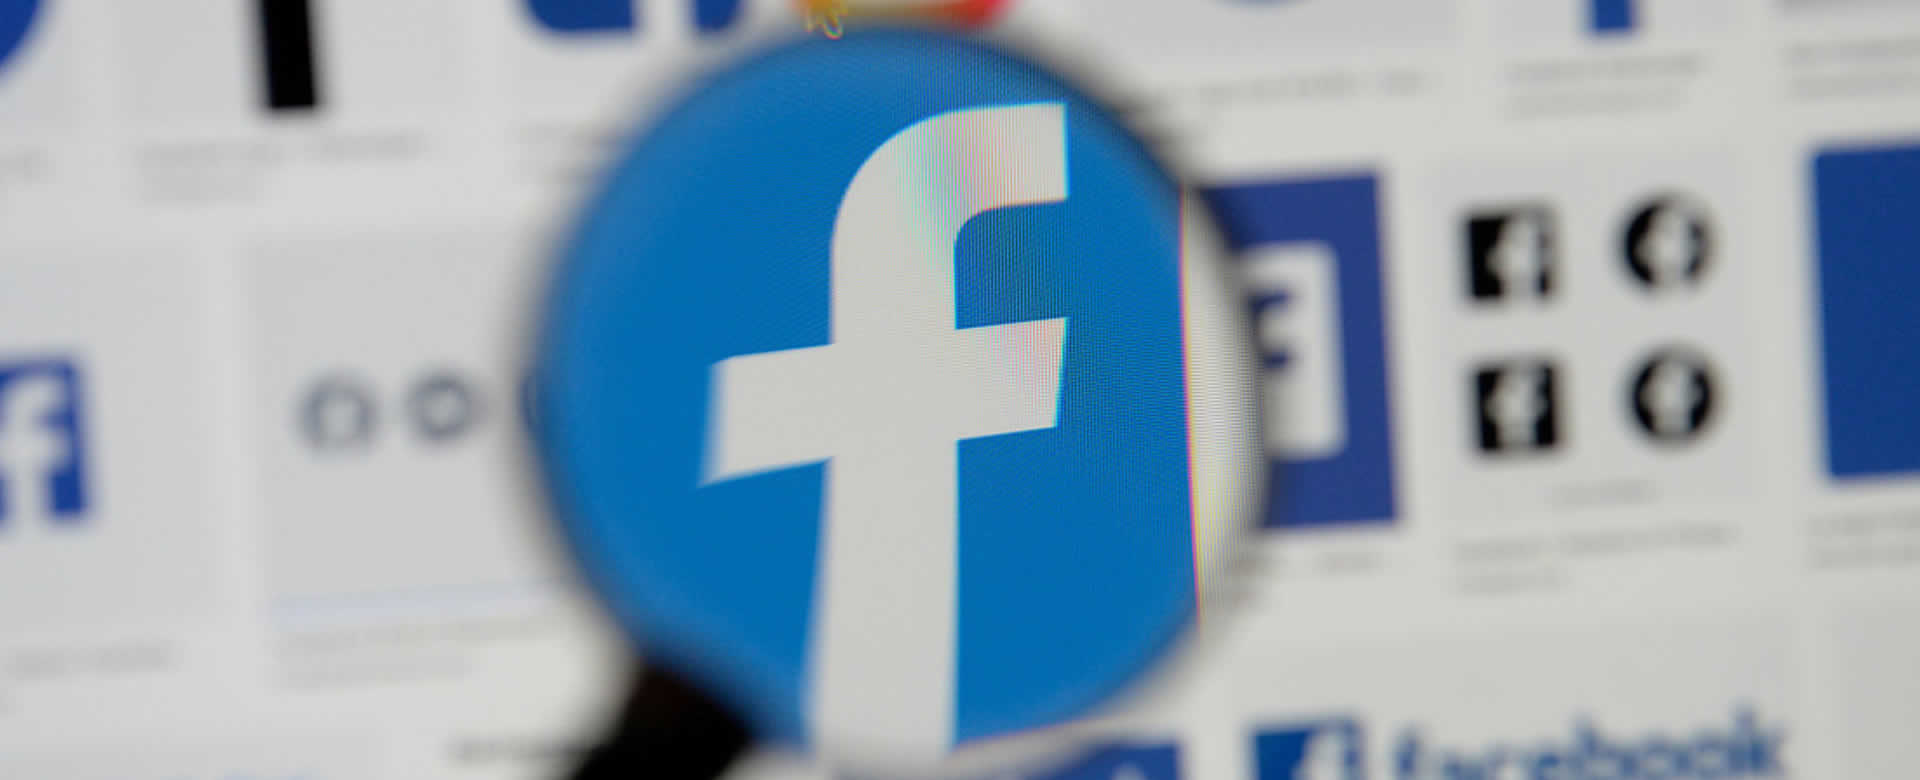 Datos personales de millones de usuarios de Facebook fueron expuestos